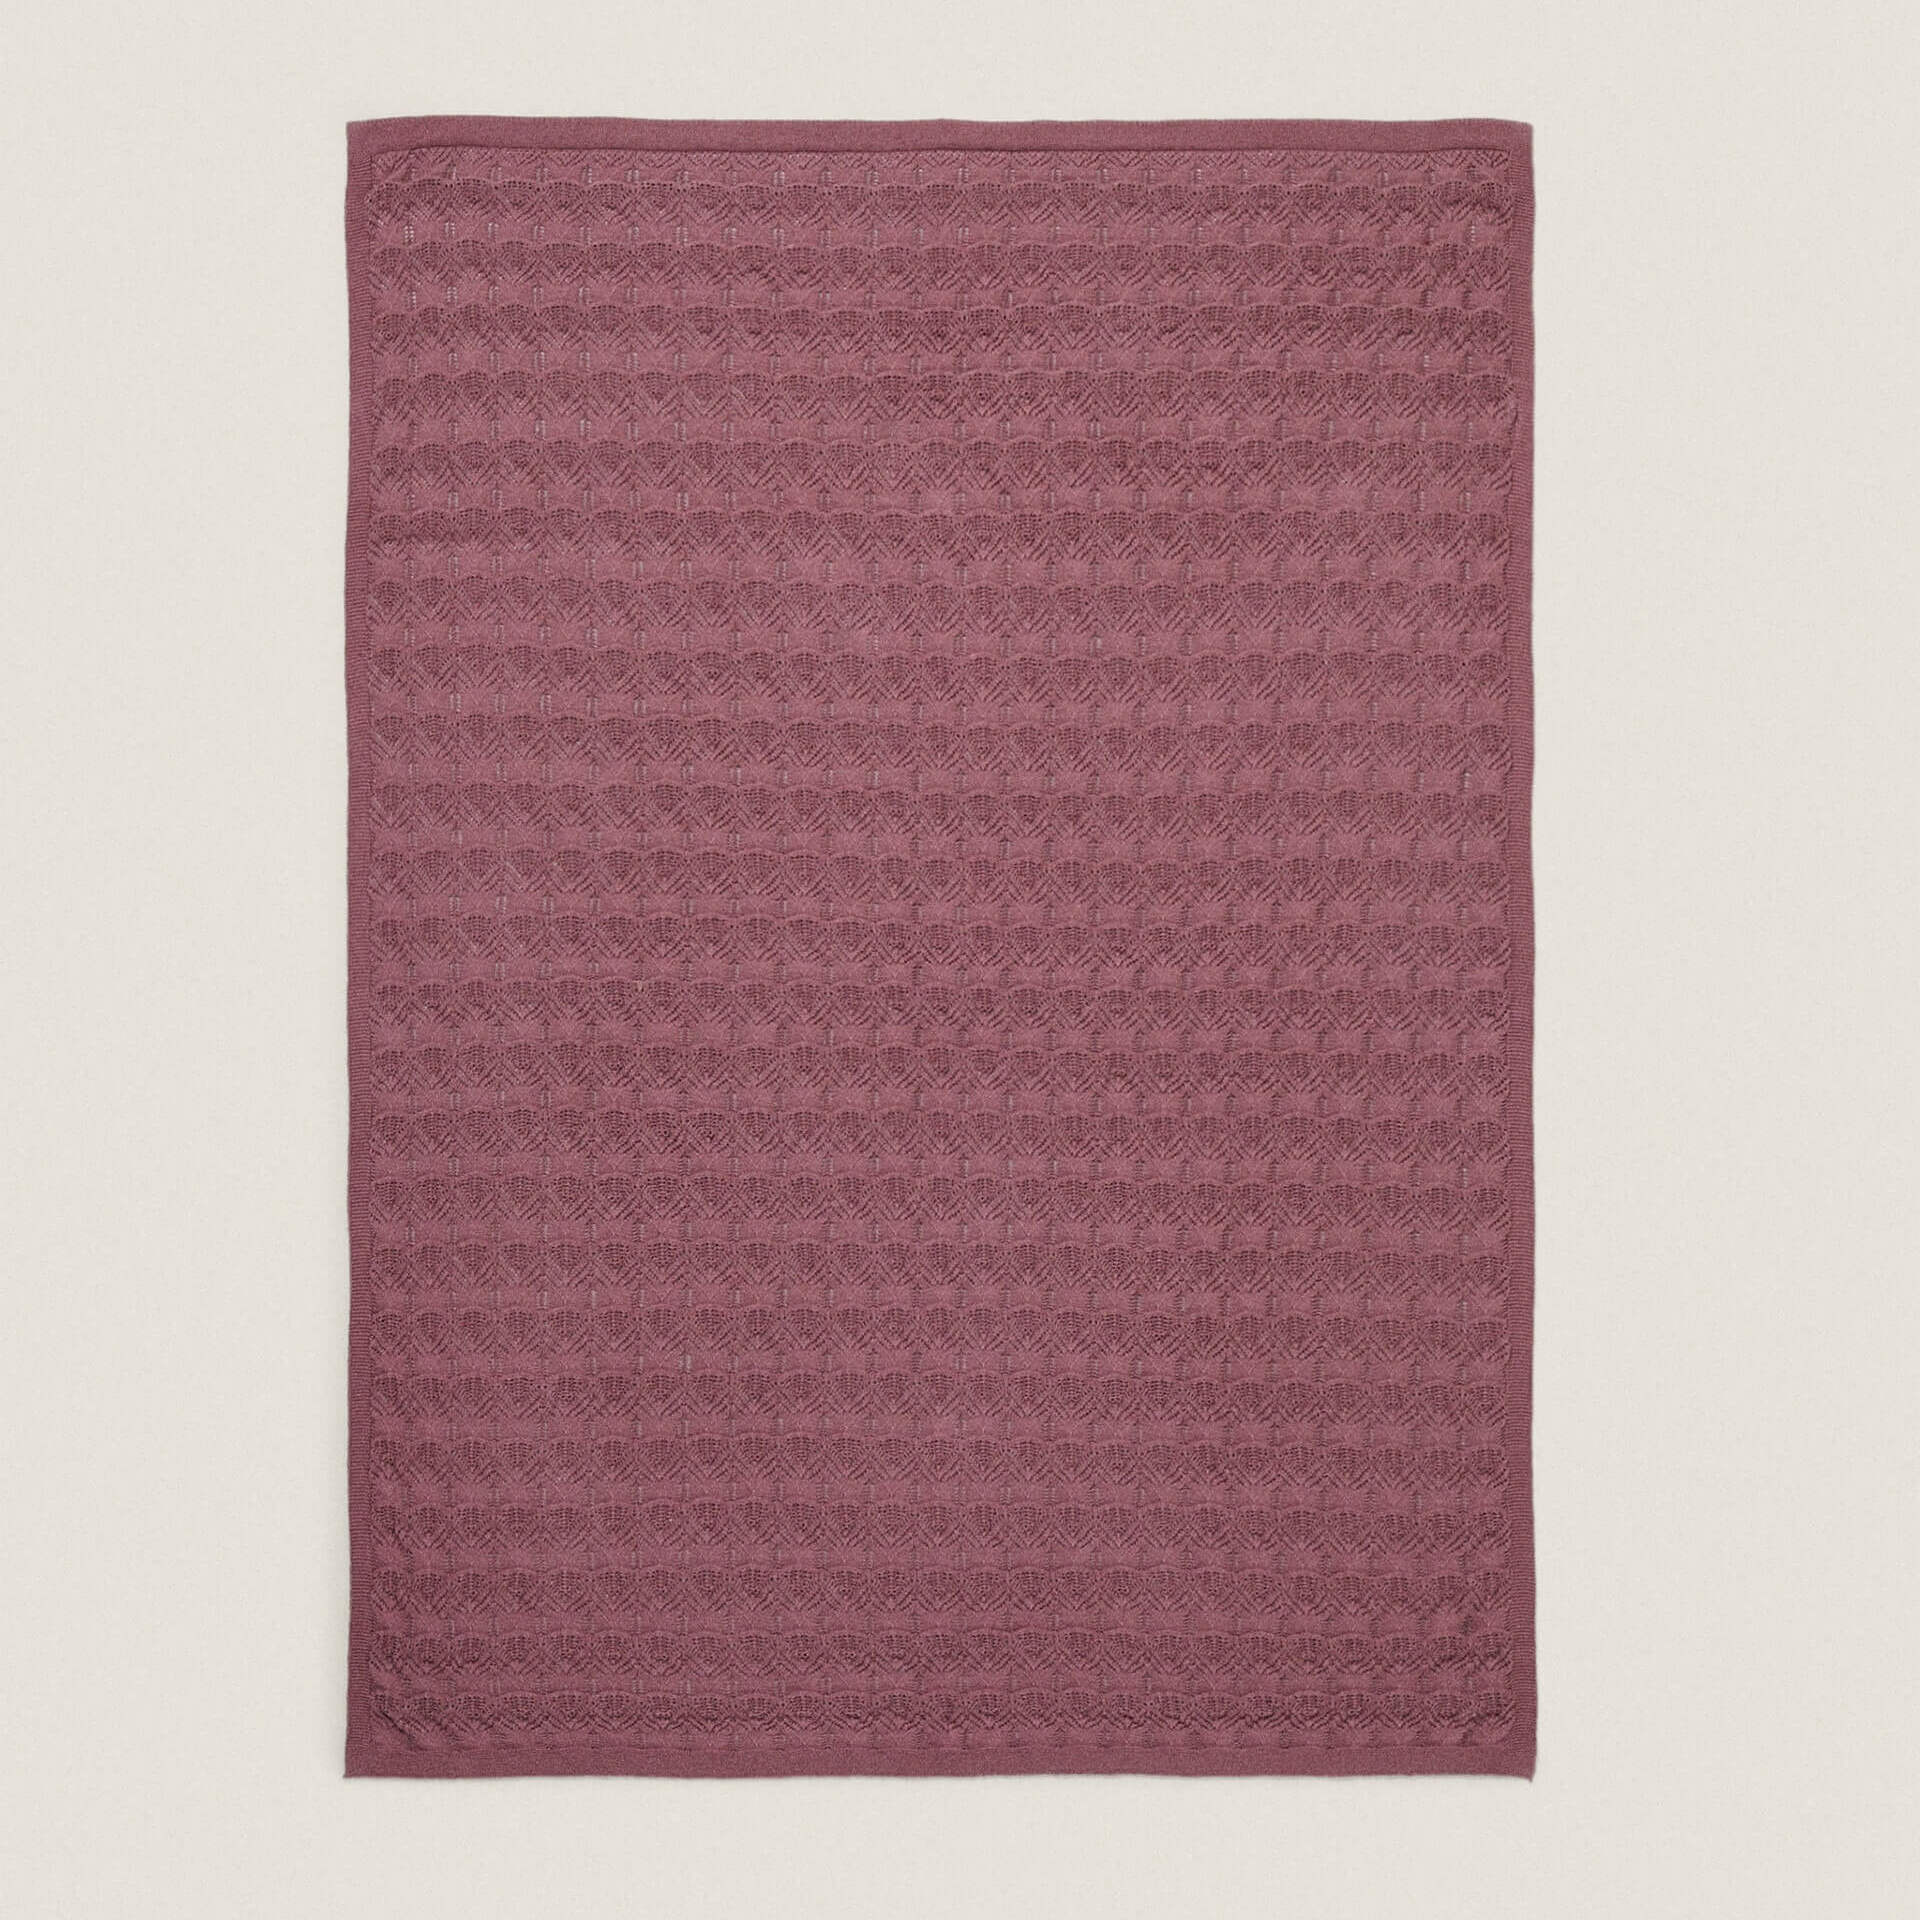 Детское одеяло Zara Home Open-Knit Cotton, бордовый детское двустороннее хлопковое одеяло 6 шт компл